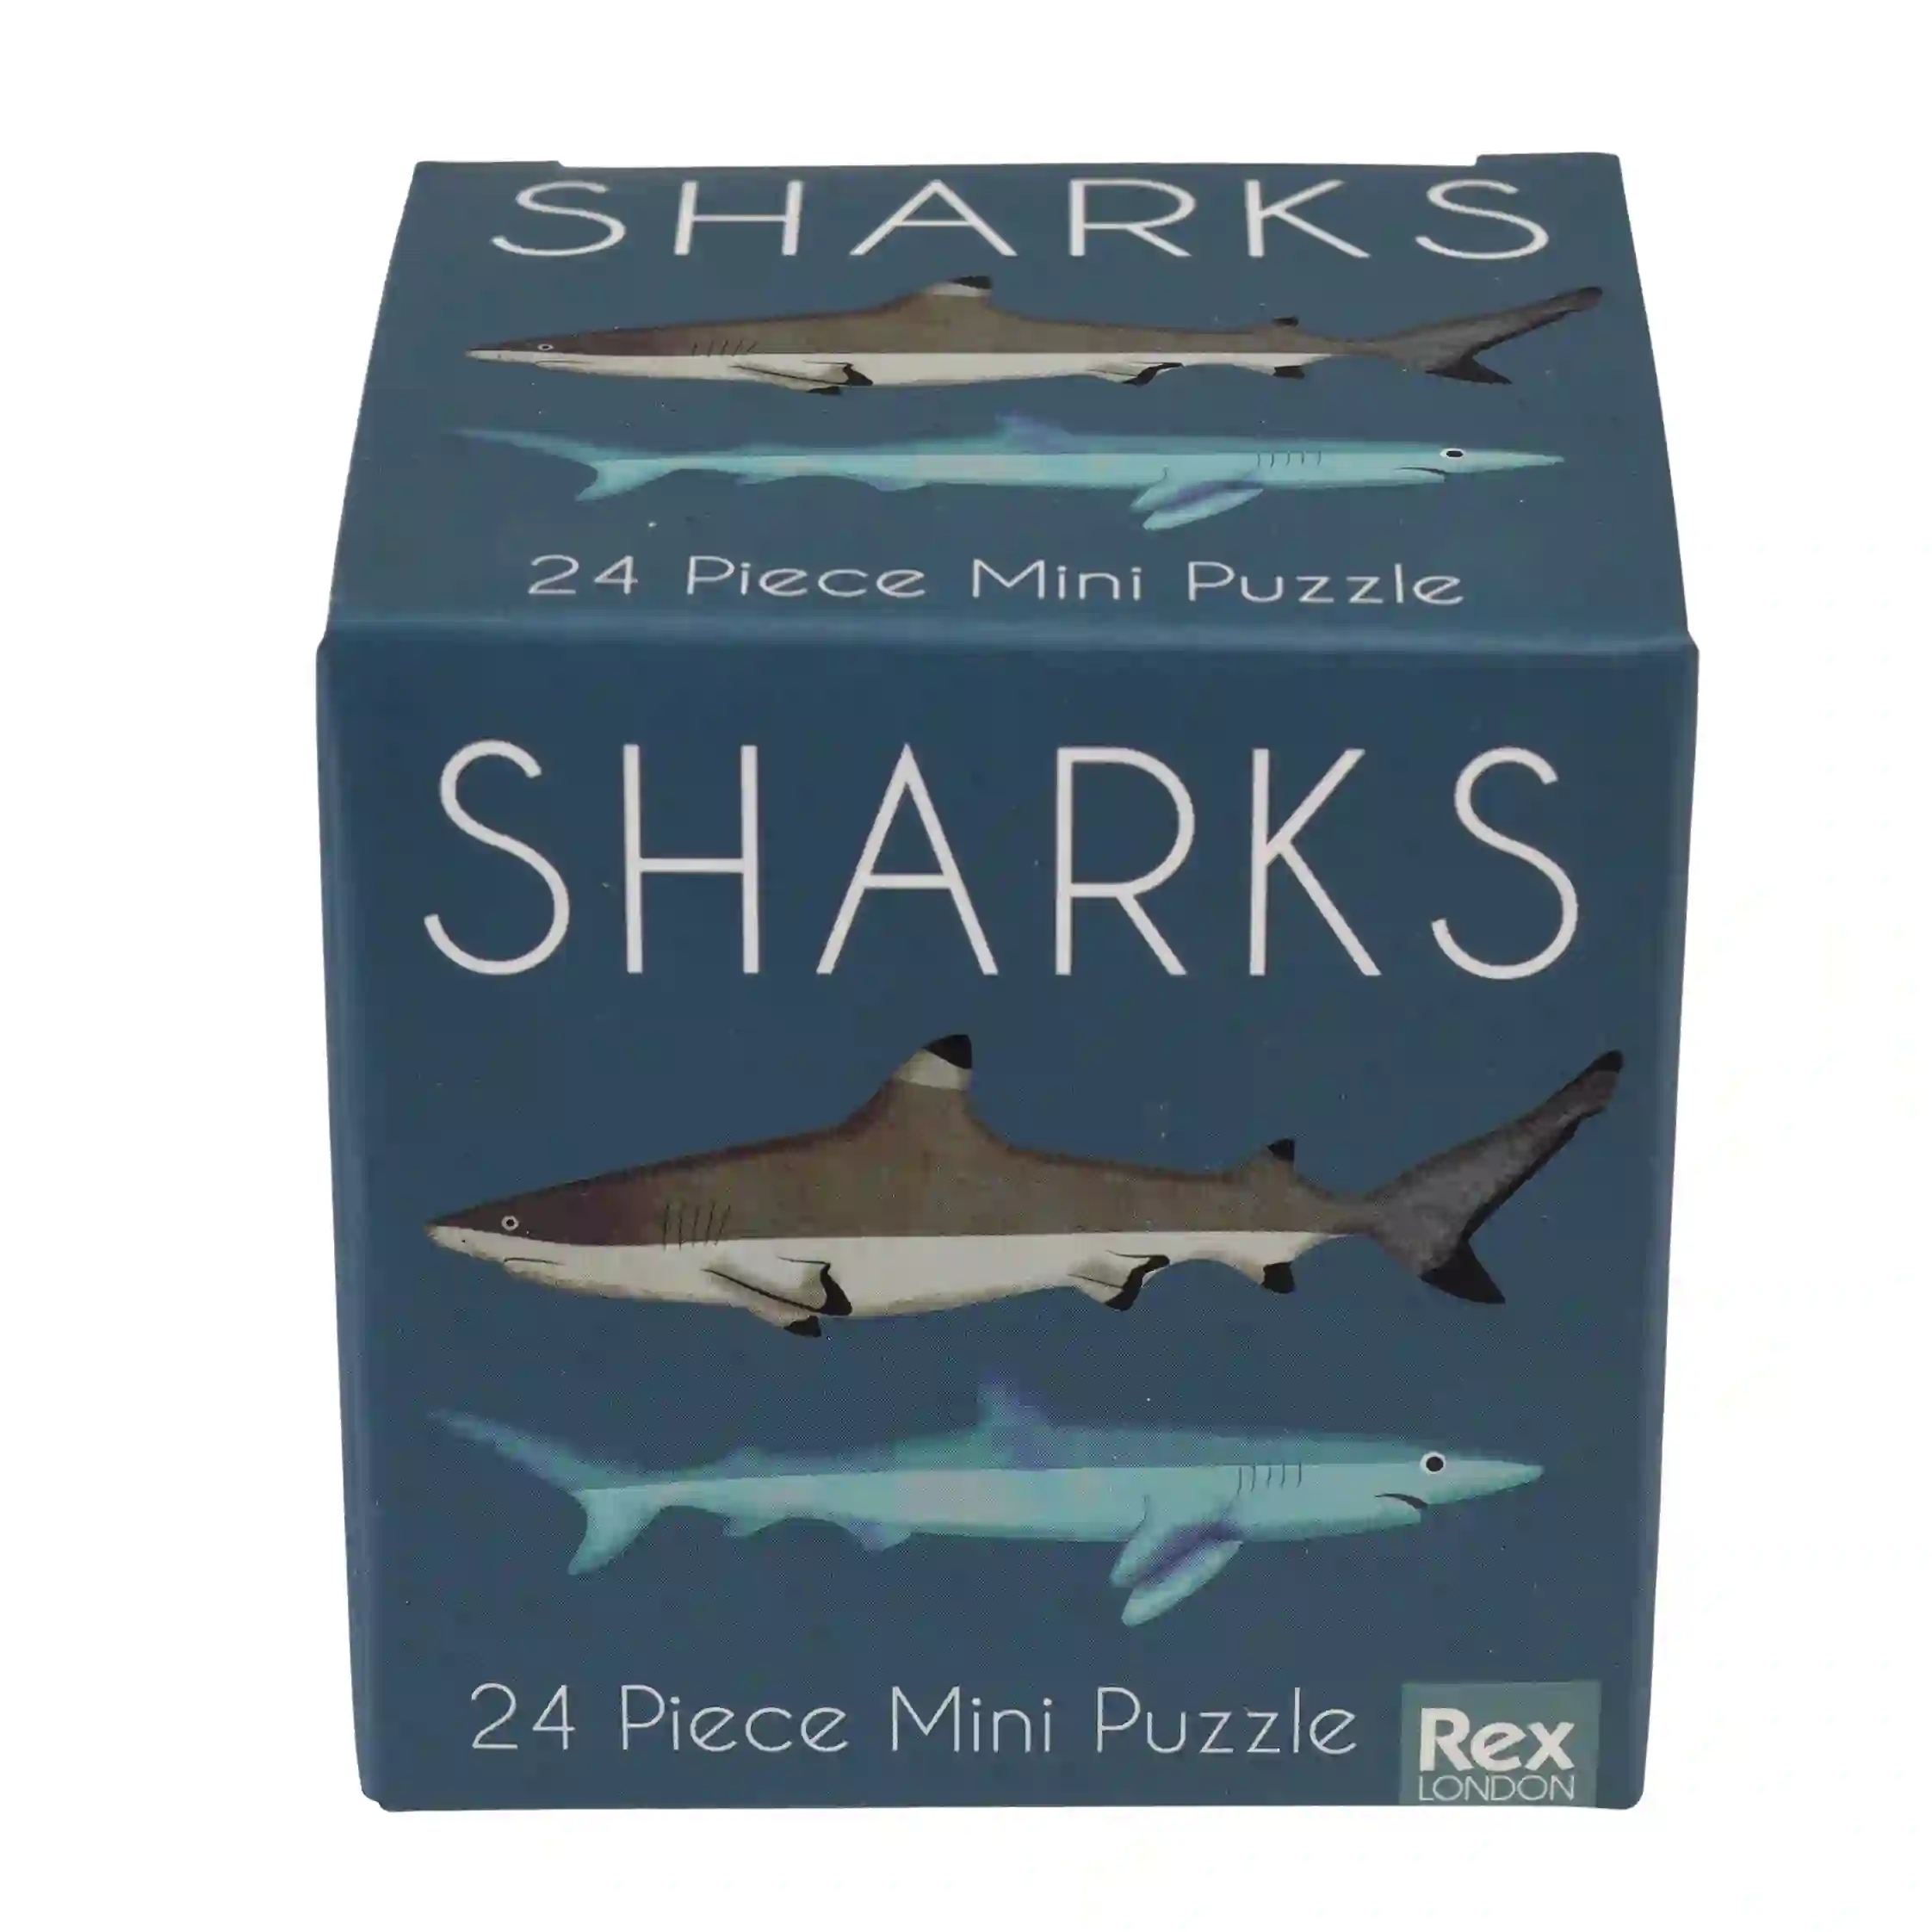 mini-puzzle sharks (24 teile)